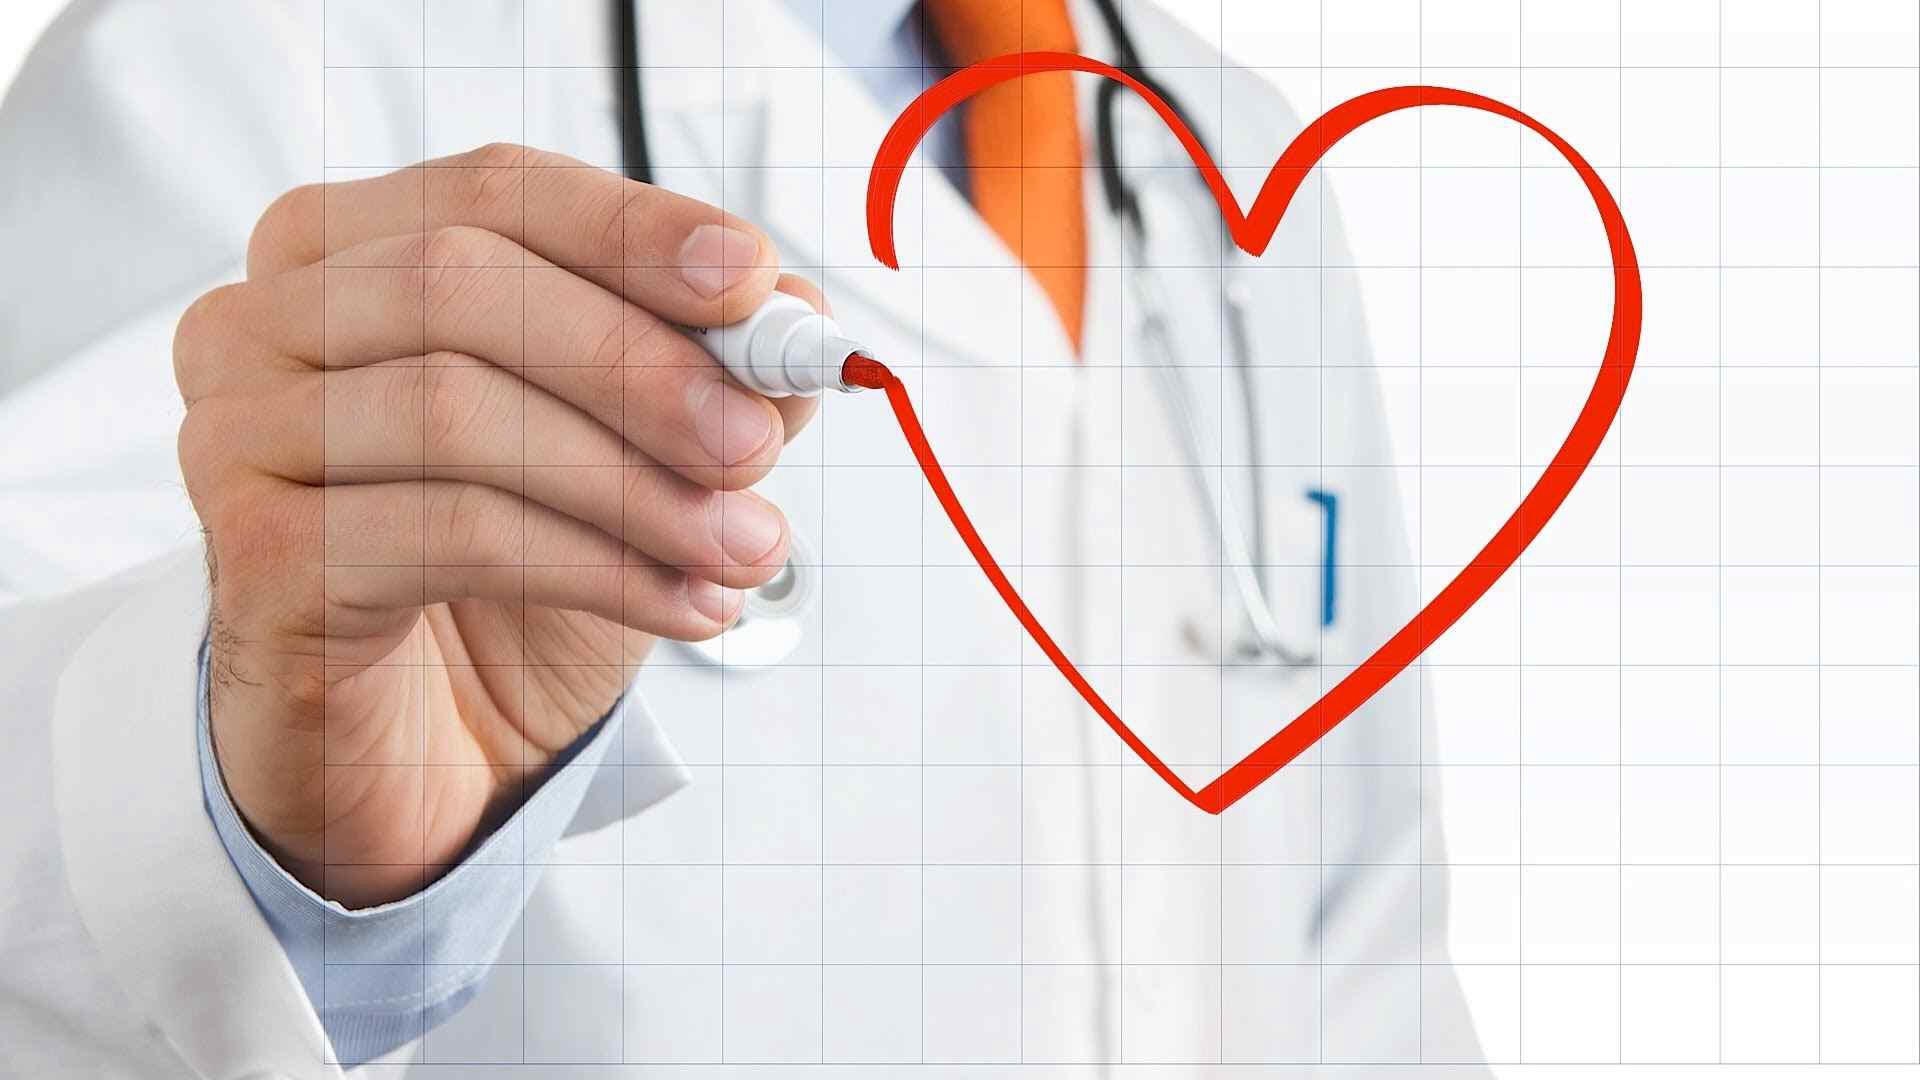 Κίνδυνος καρδιακής ανεπάρκειας ανάλογα με την ομάδα αίματος